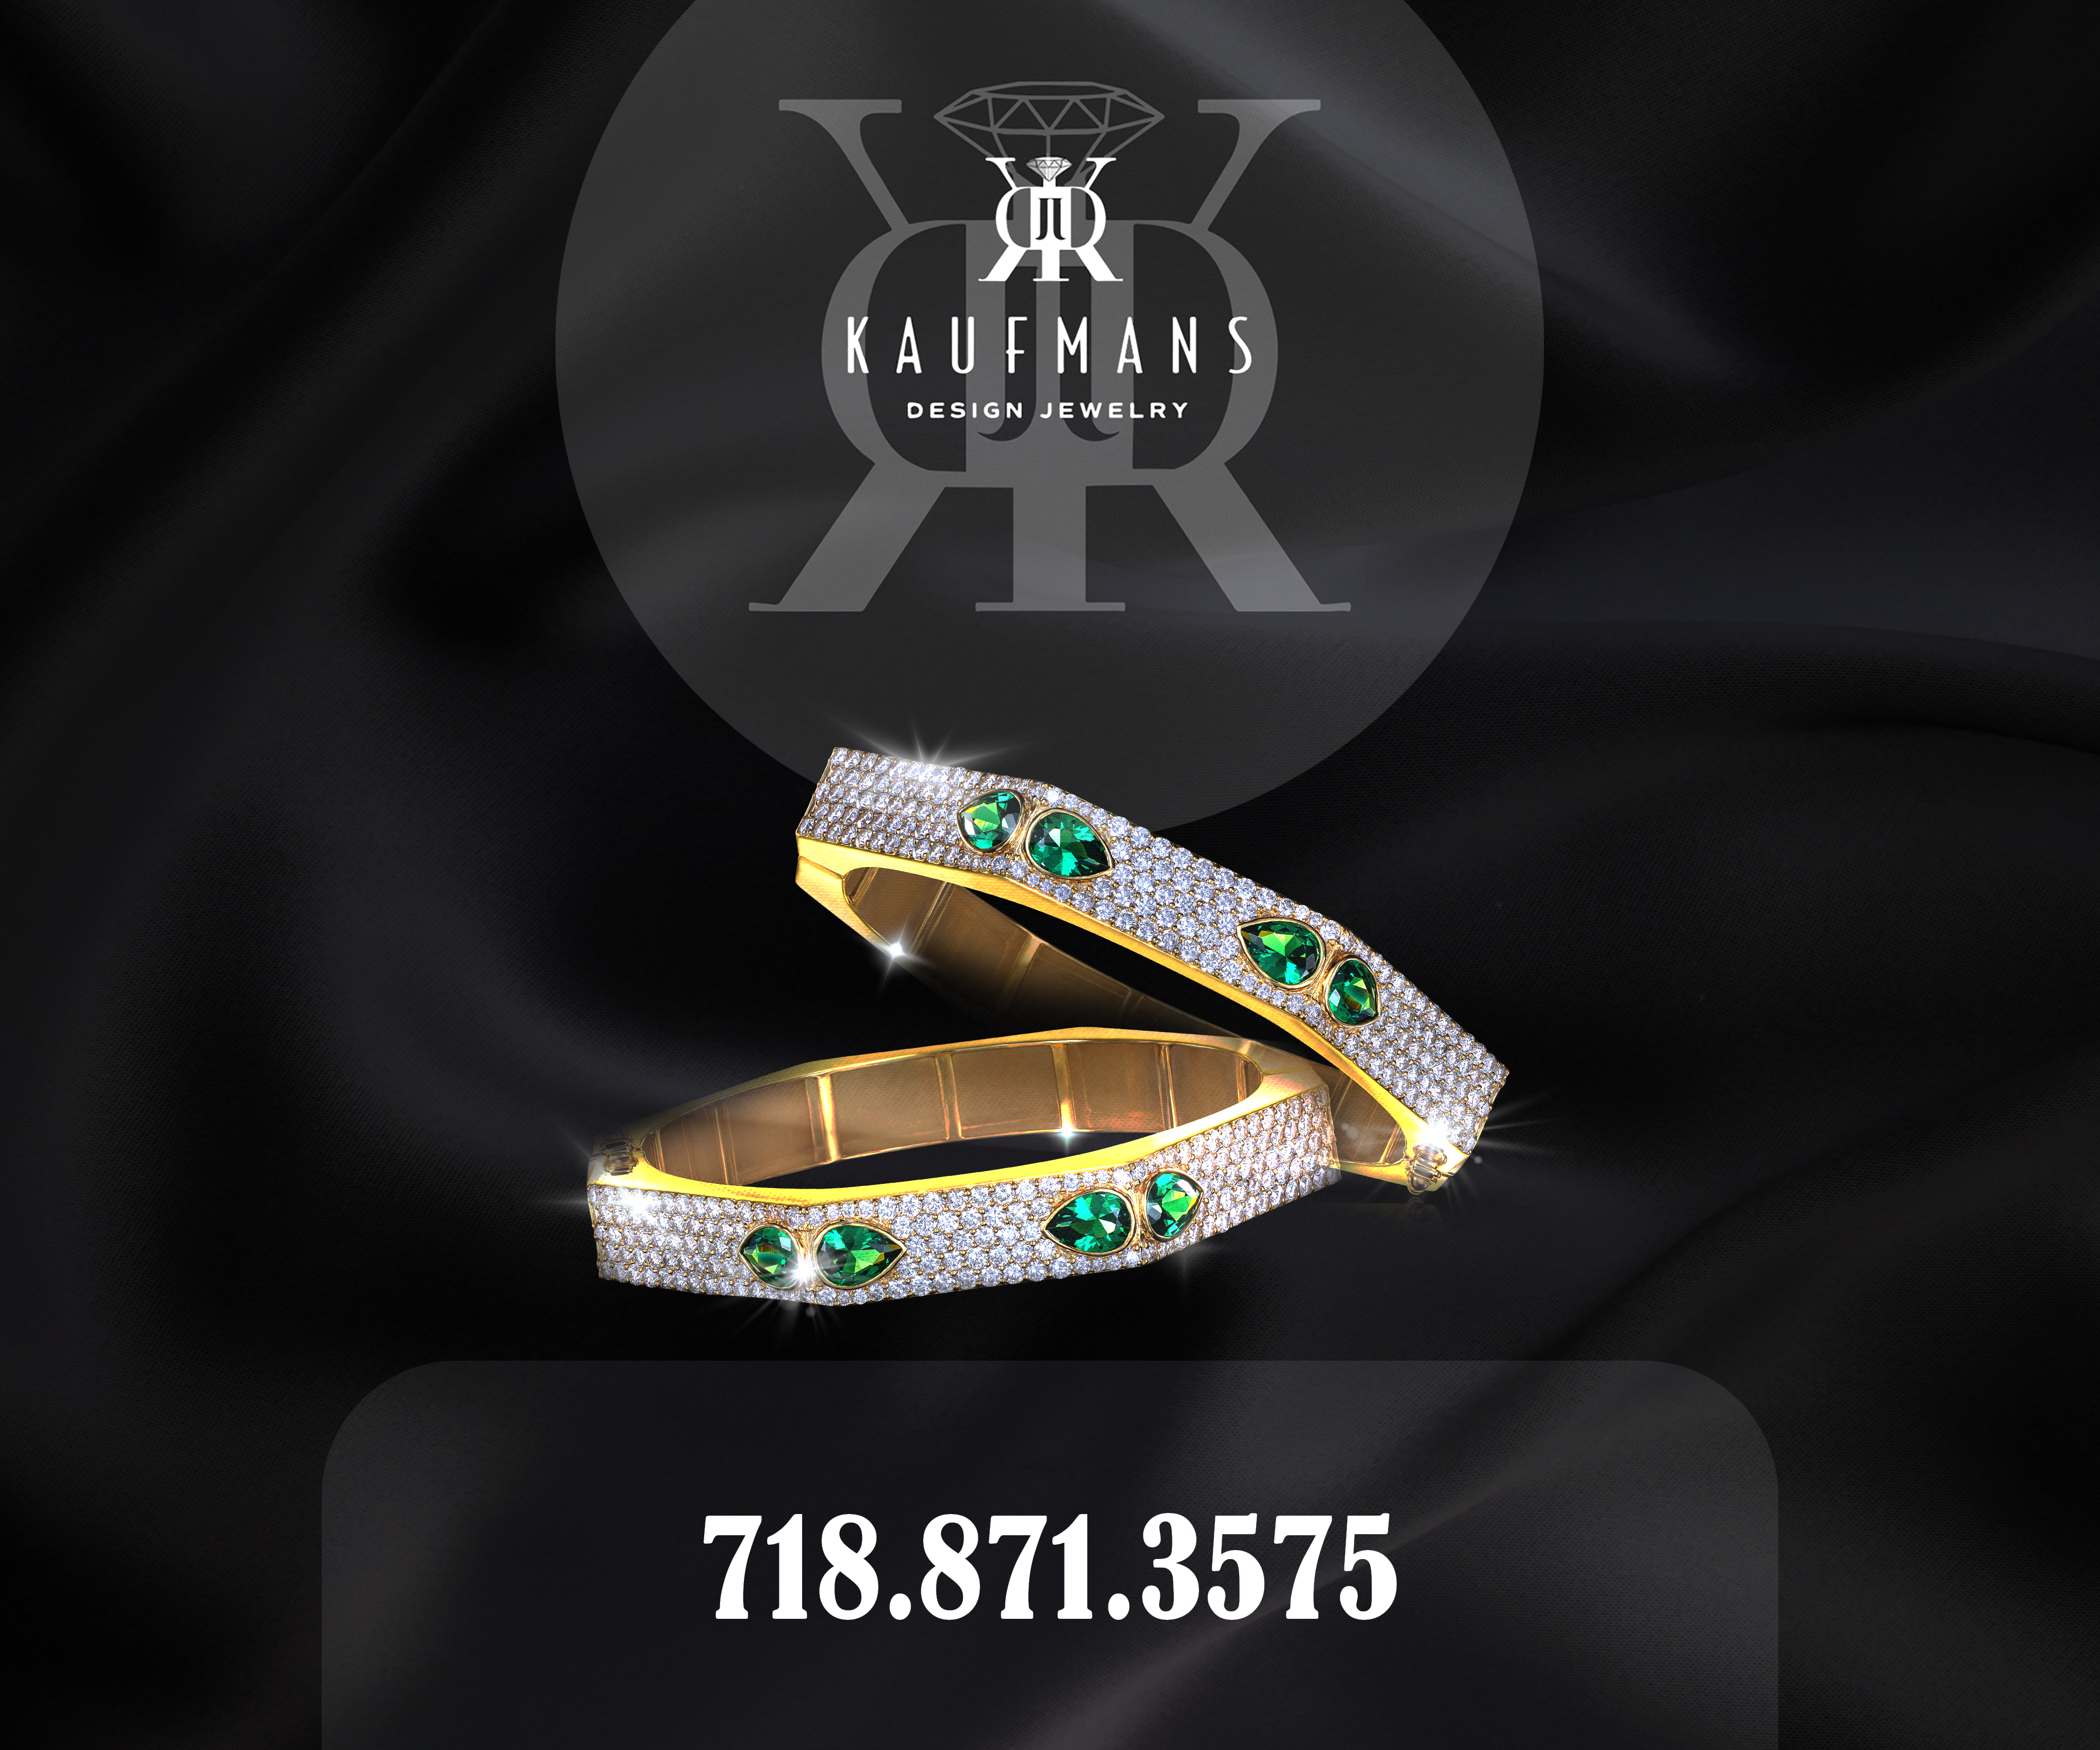 Kaufman Jewelers